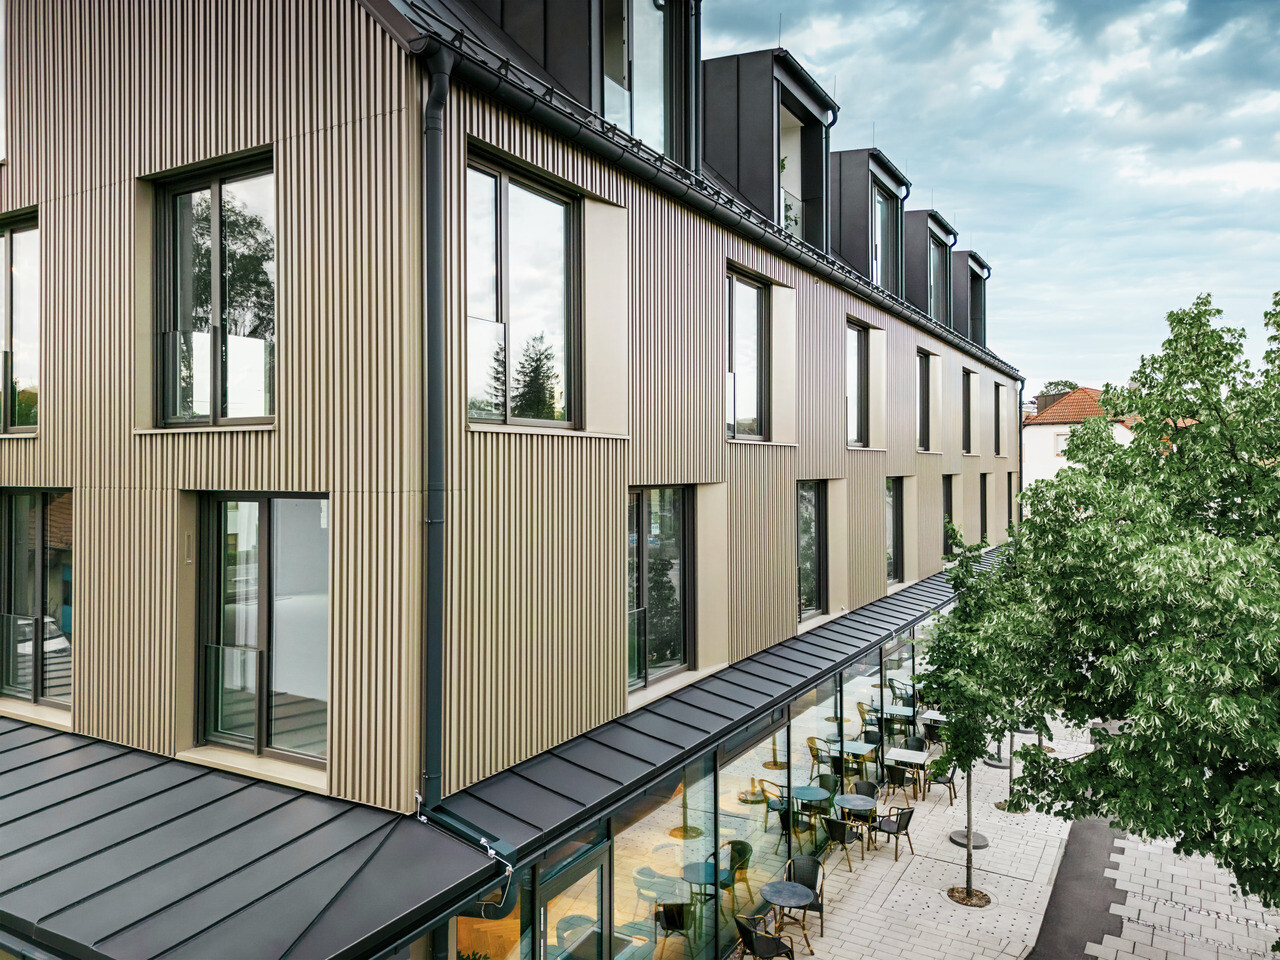 Na obrázku je moderní budova ve Feldkirchu, kterou navrhl architekt Stefan Heigl. Fasáda je vyrobena z Prefalz v barvě bronz a sedlová střecha je pokryta Prefalz v černo-šedé. Velká okna poskytují dostatek světla uvnitř, zatímco prosklená část přízemí nabízí příjemný jídelní kout. Výběr kvalitních materiálů a elegantní design dodávají budově moderní a stylový vzhled.